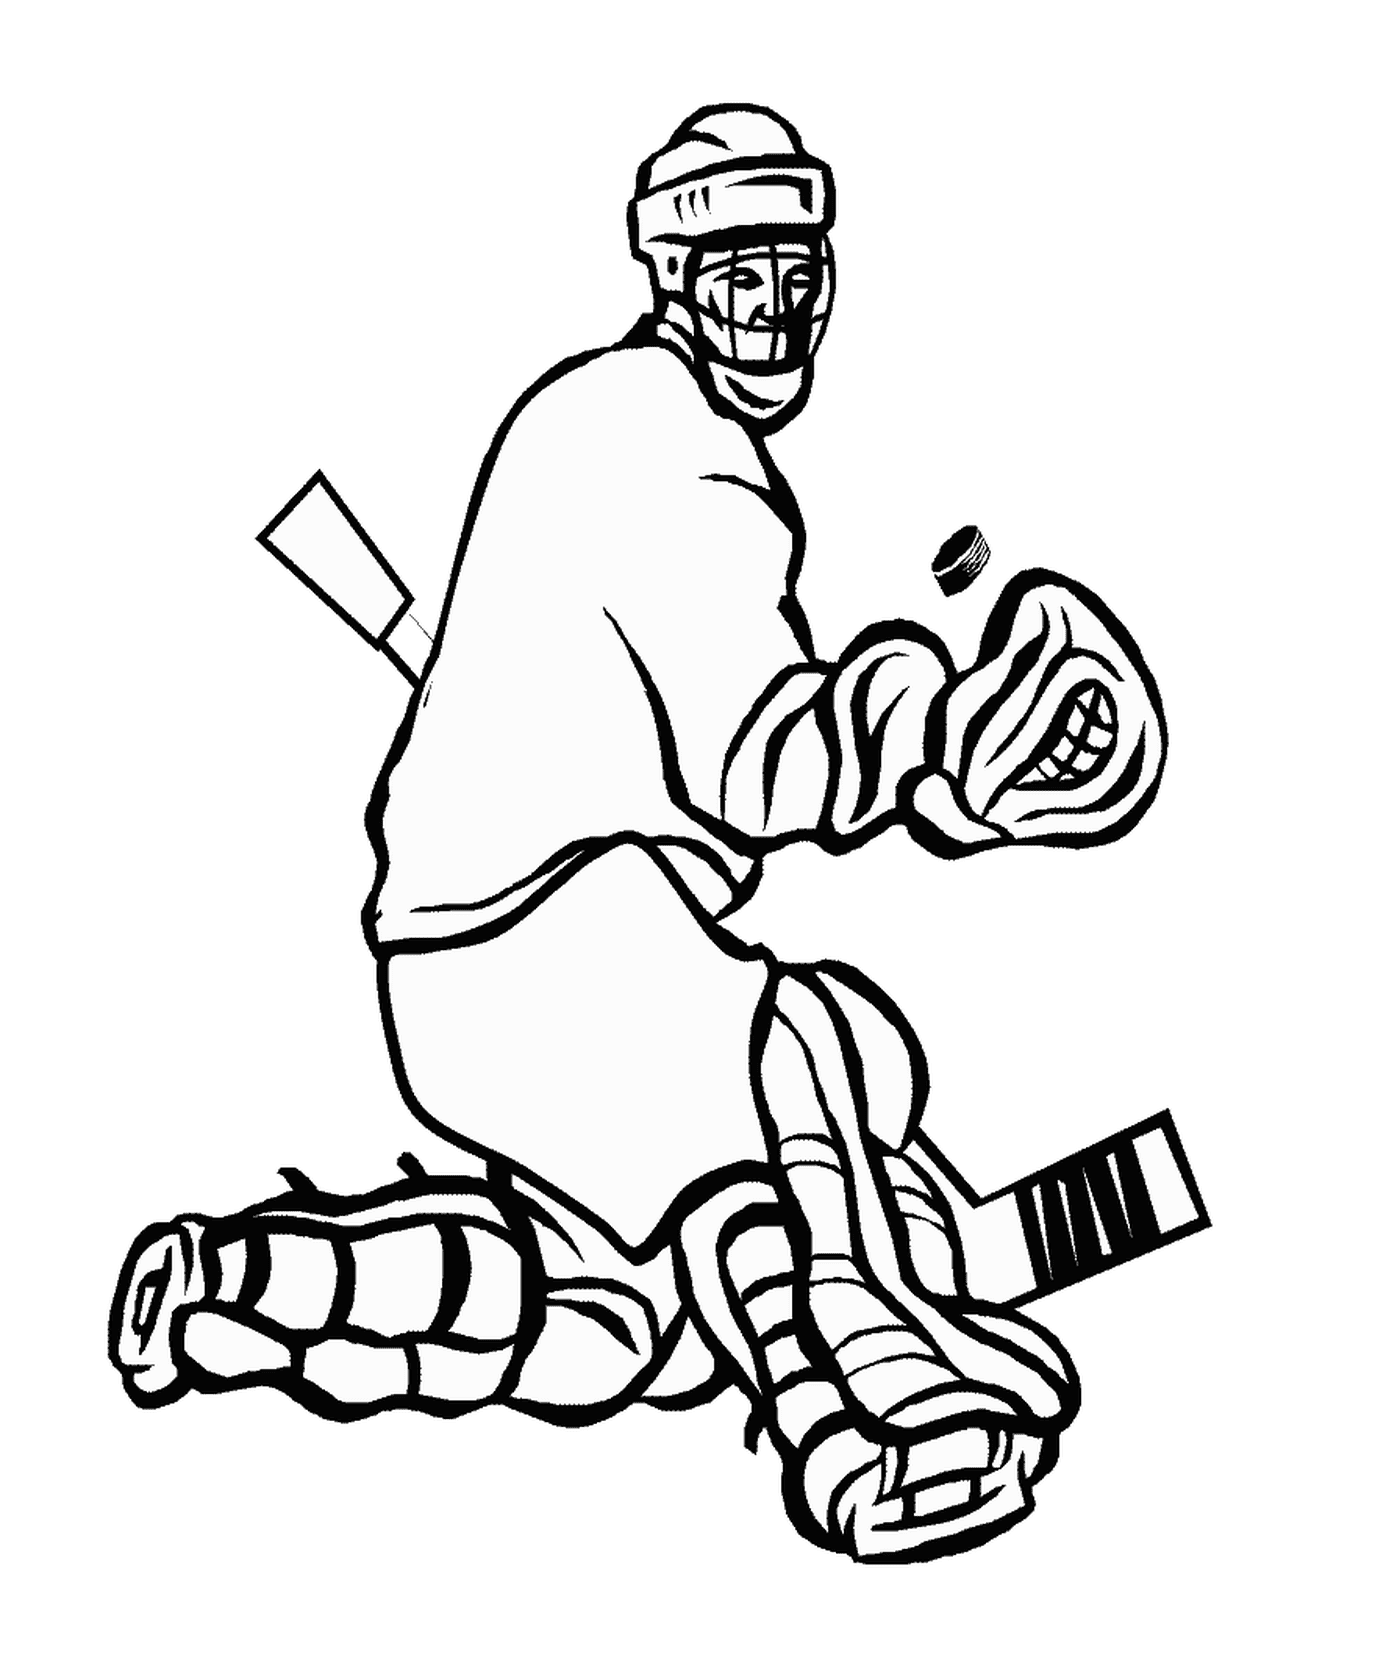 coloriage arret du gardien de hockey